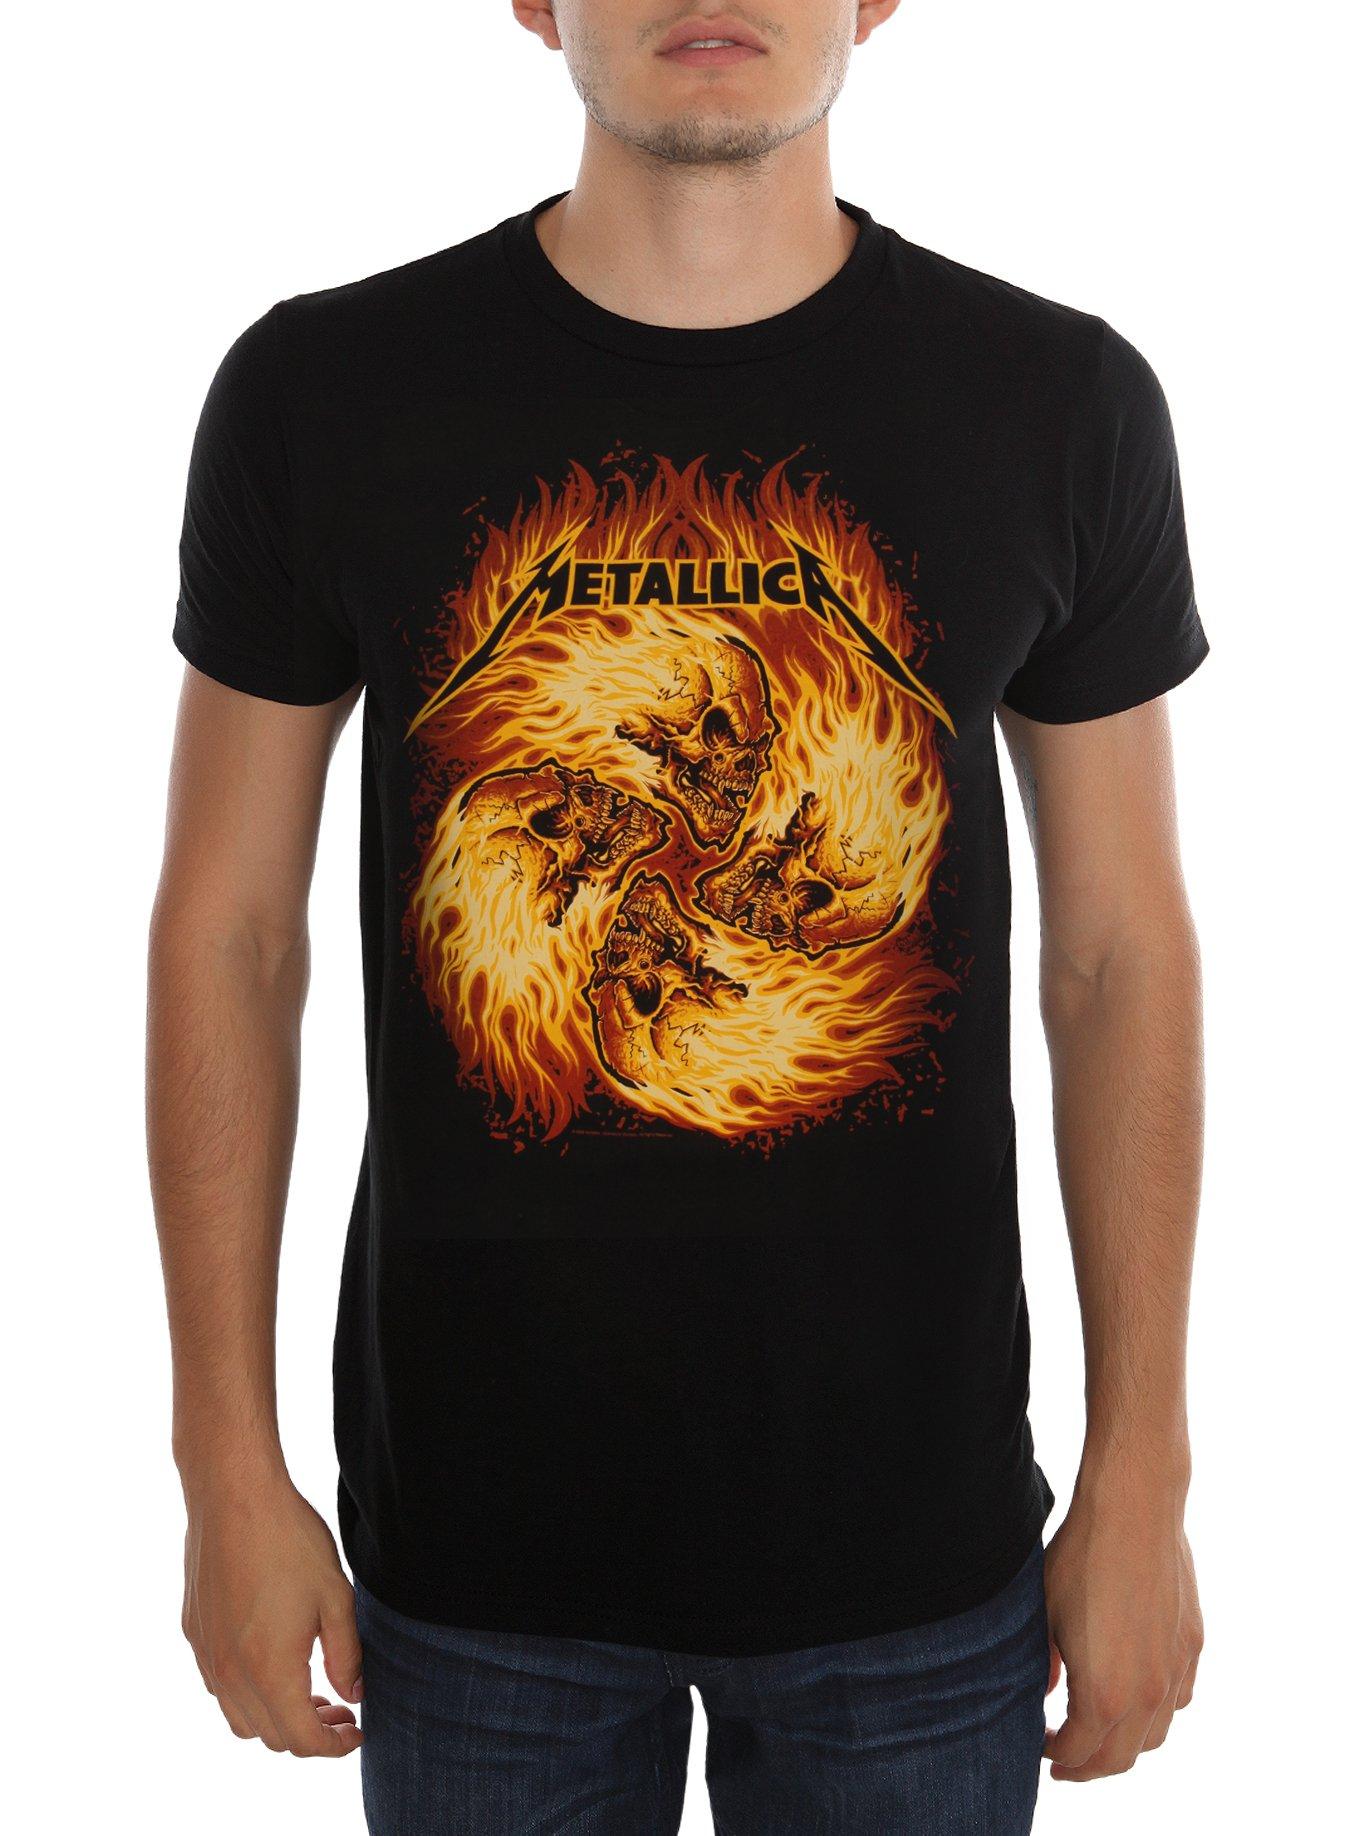 Metallica Flame Skulls T-Shirt, BLACK, hi-res